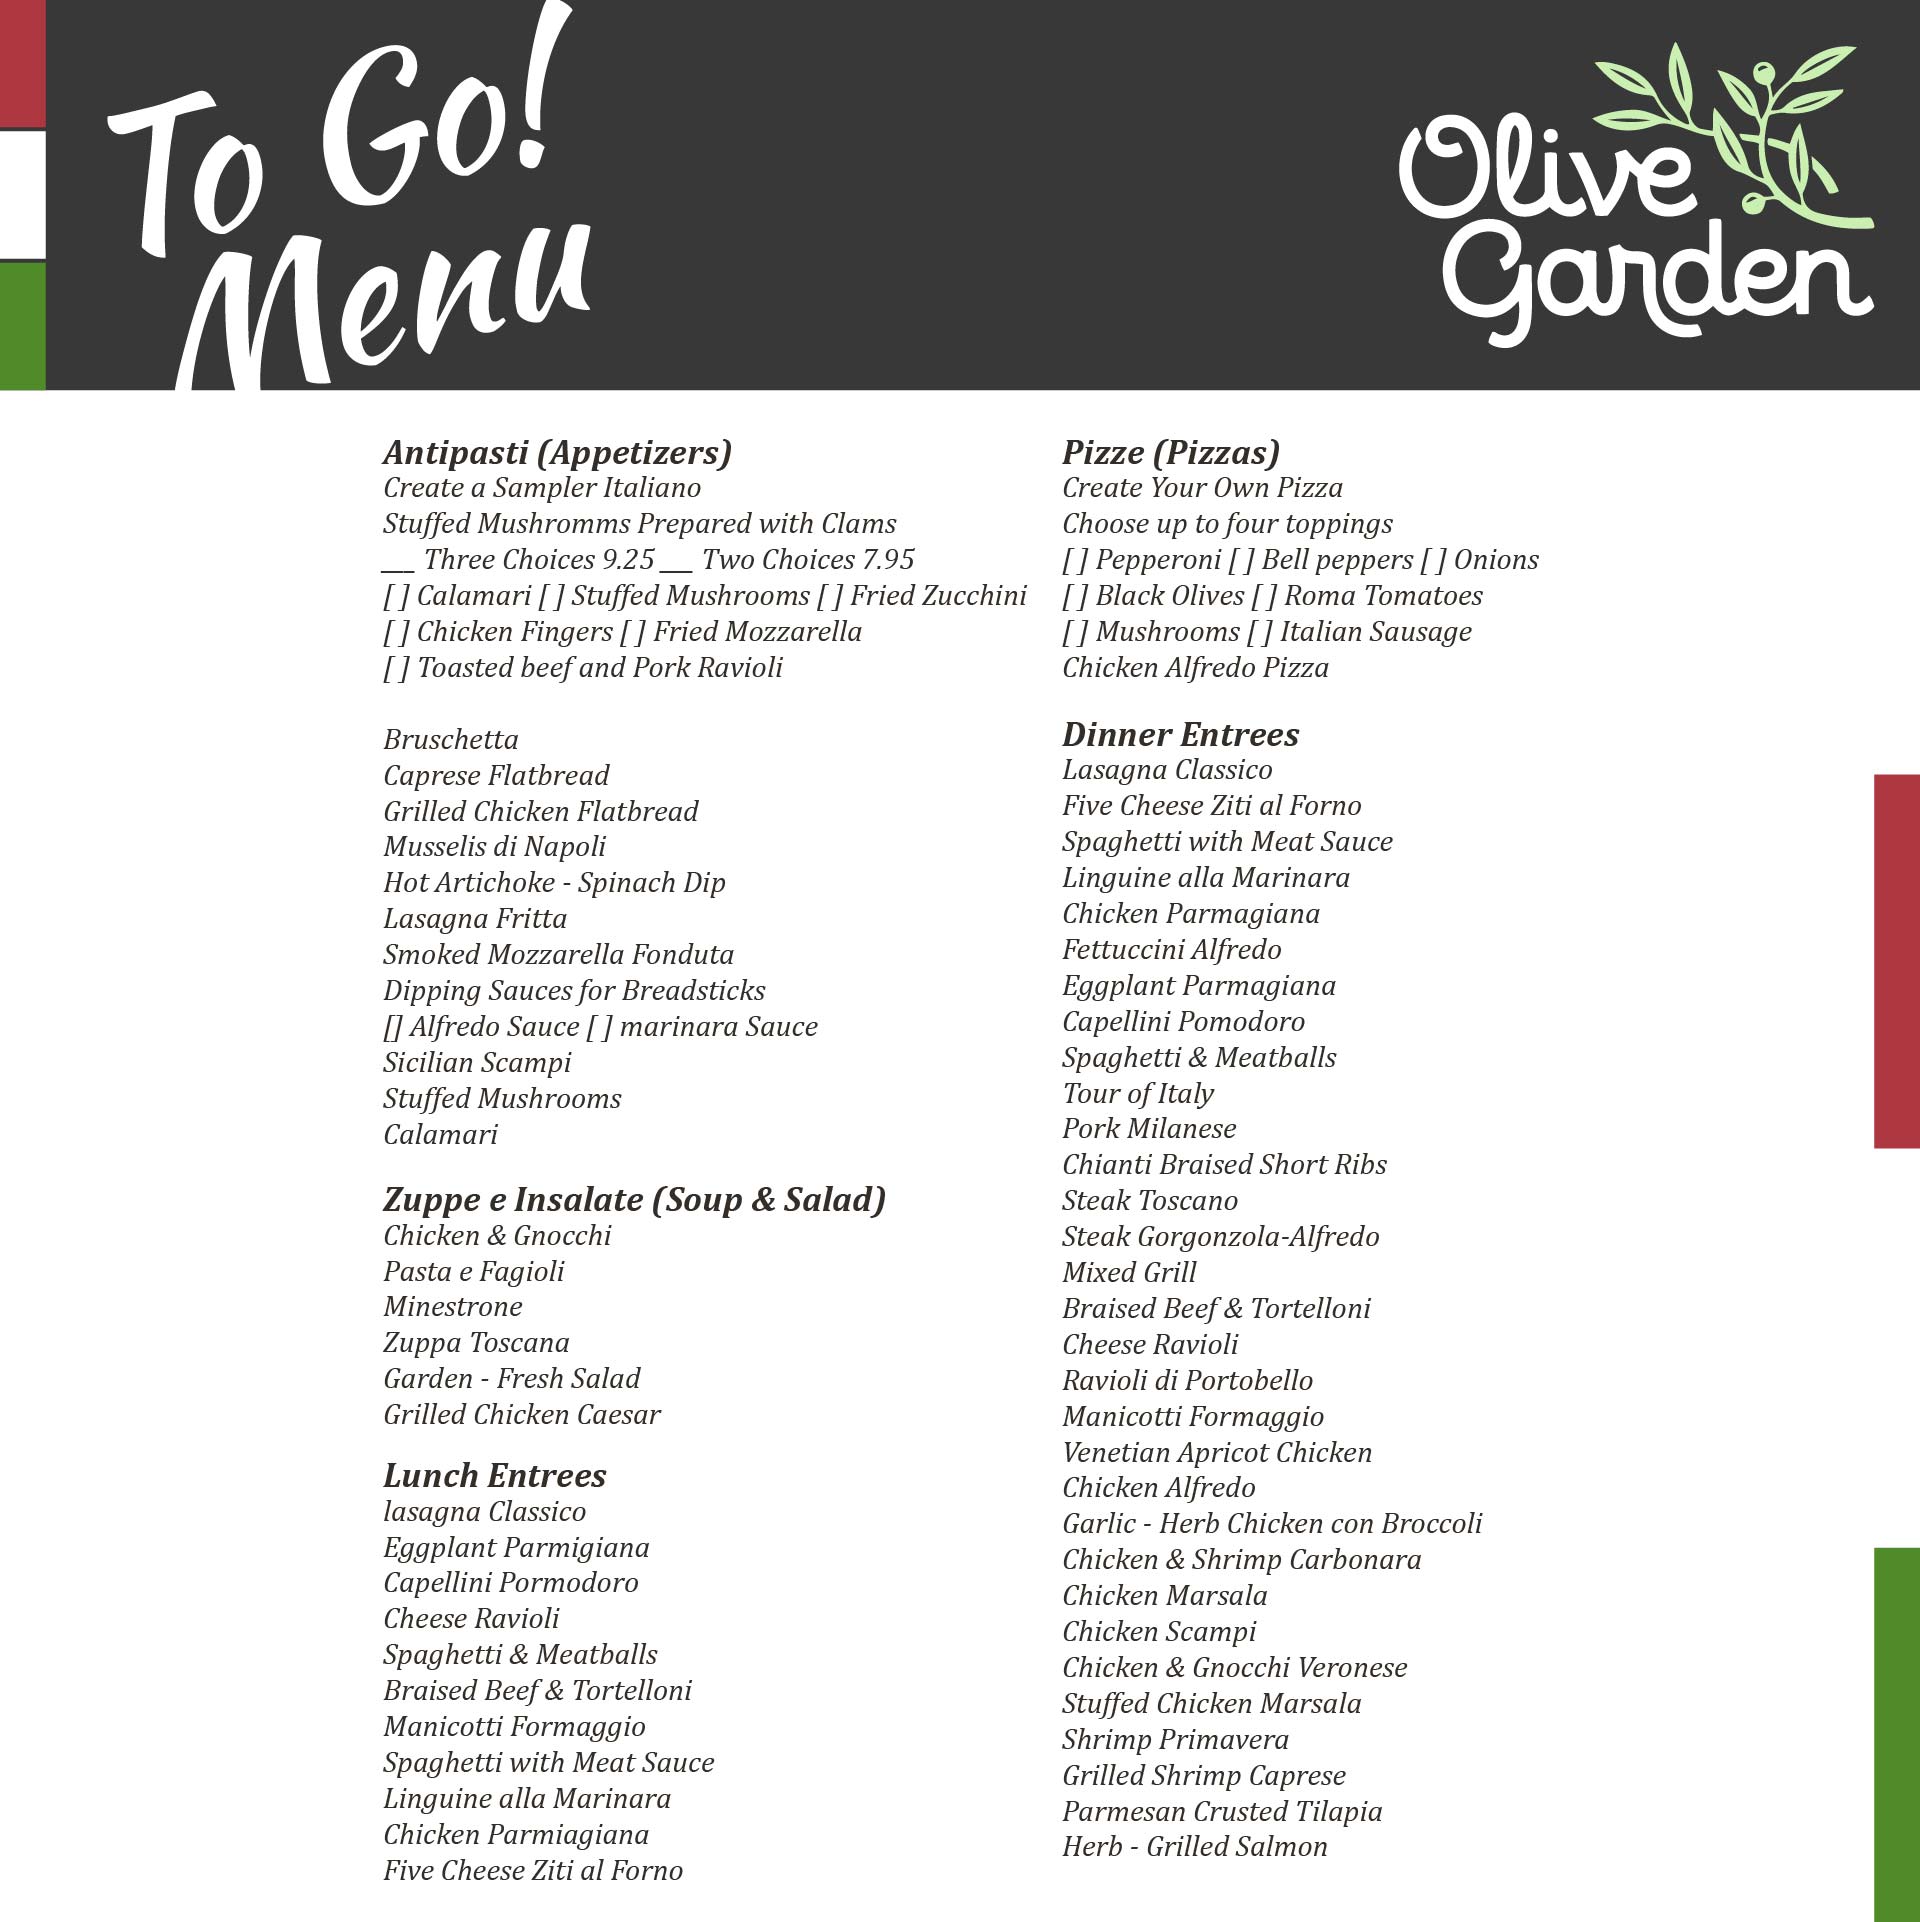 7 Best Images of Olive Garden Menu Printable Out Olive Garden Menu